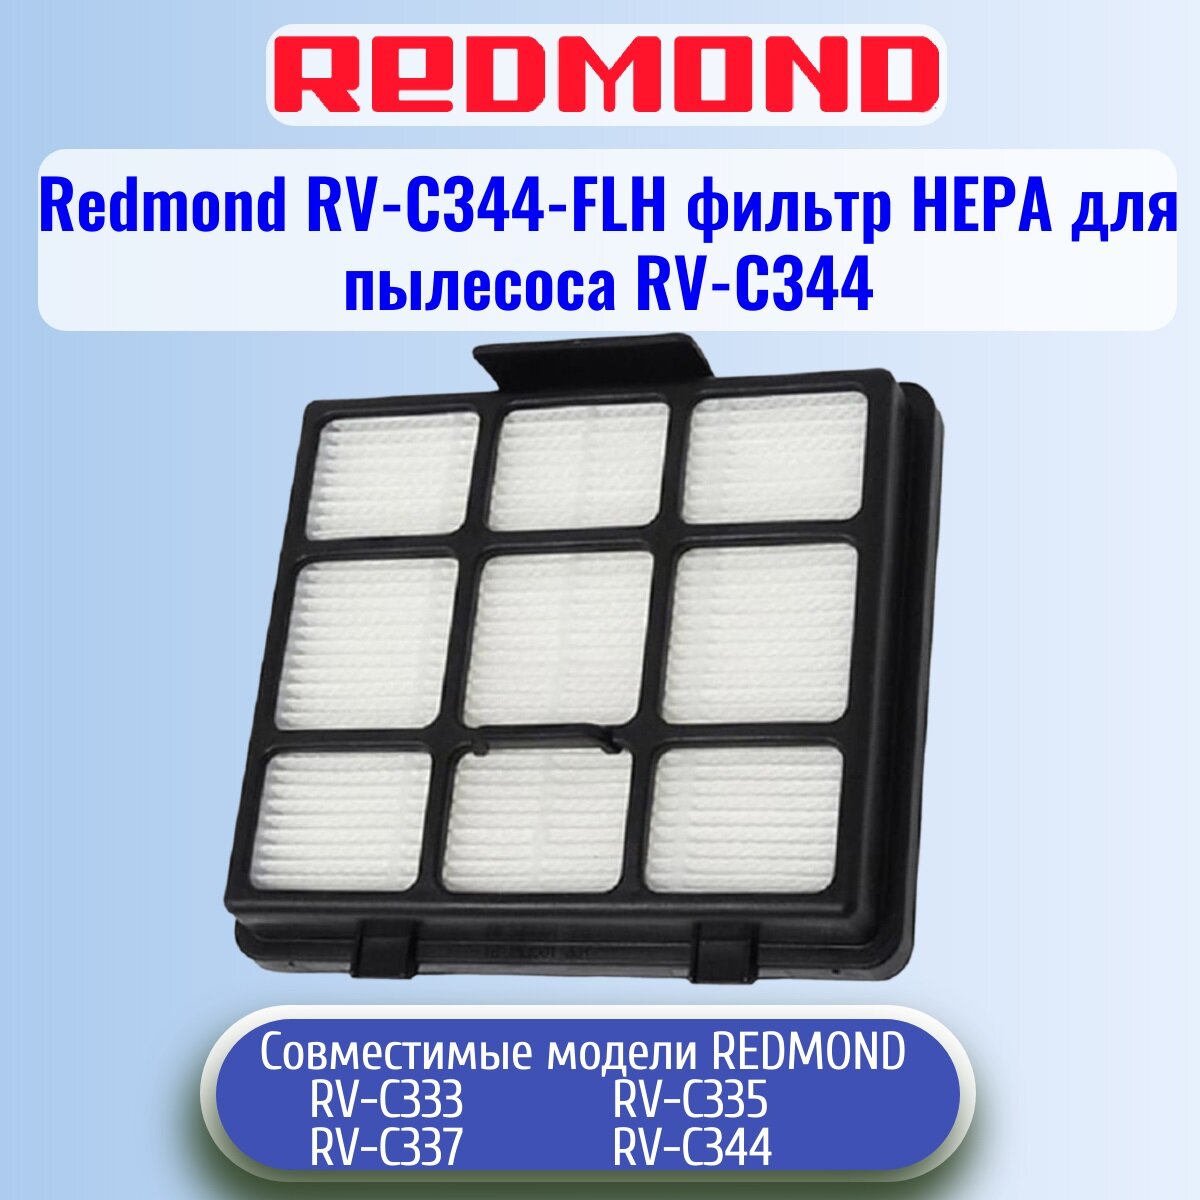 Redmond RV-C344-FLH фильтр нера для пылесоса RV-C344